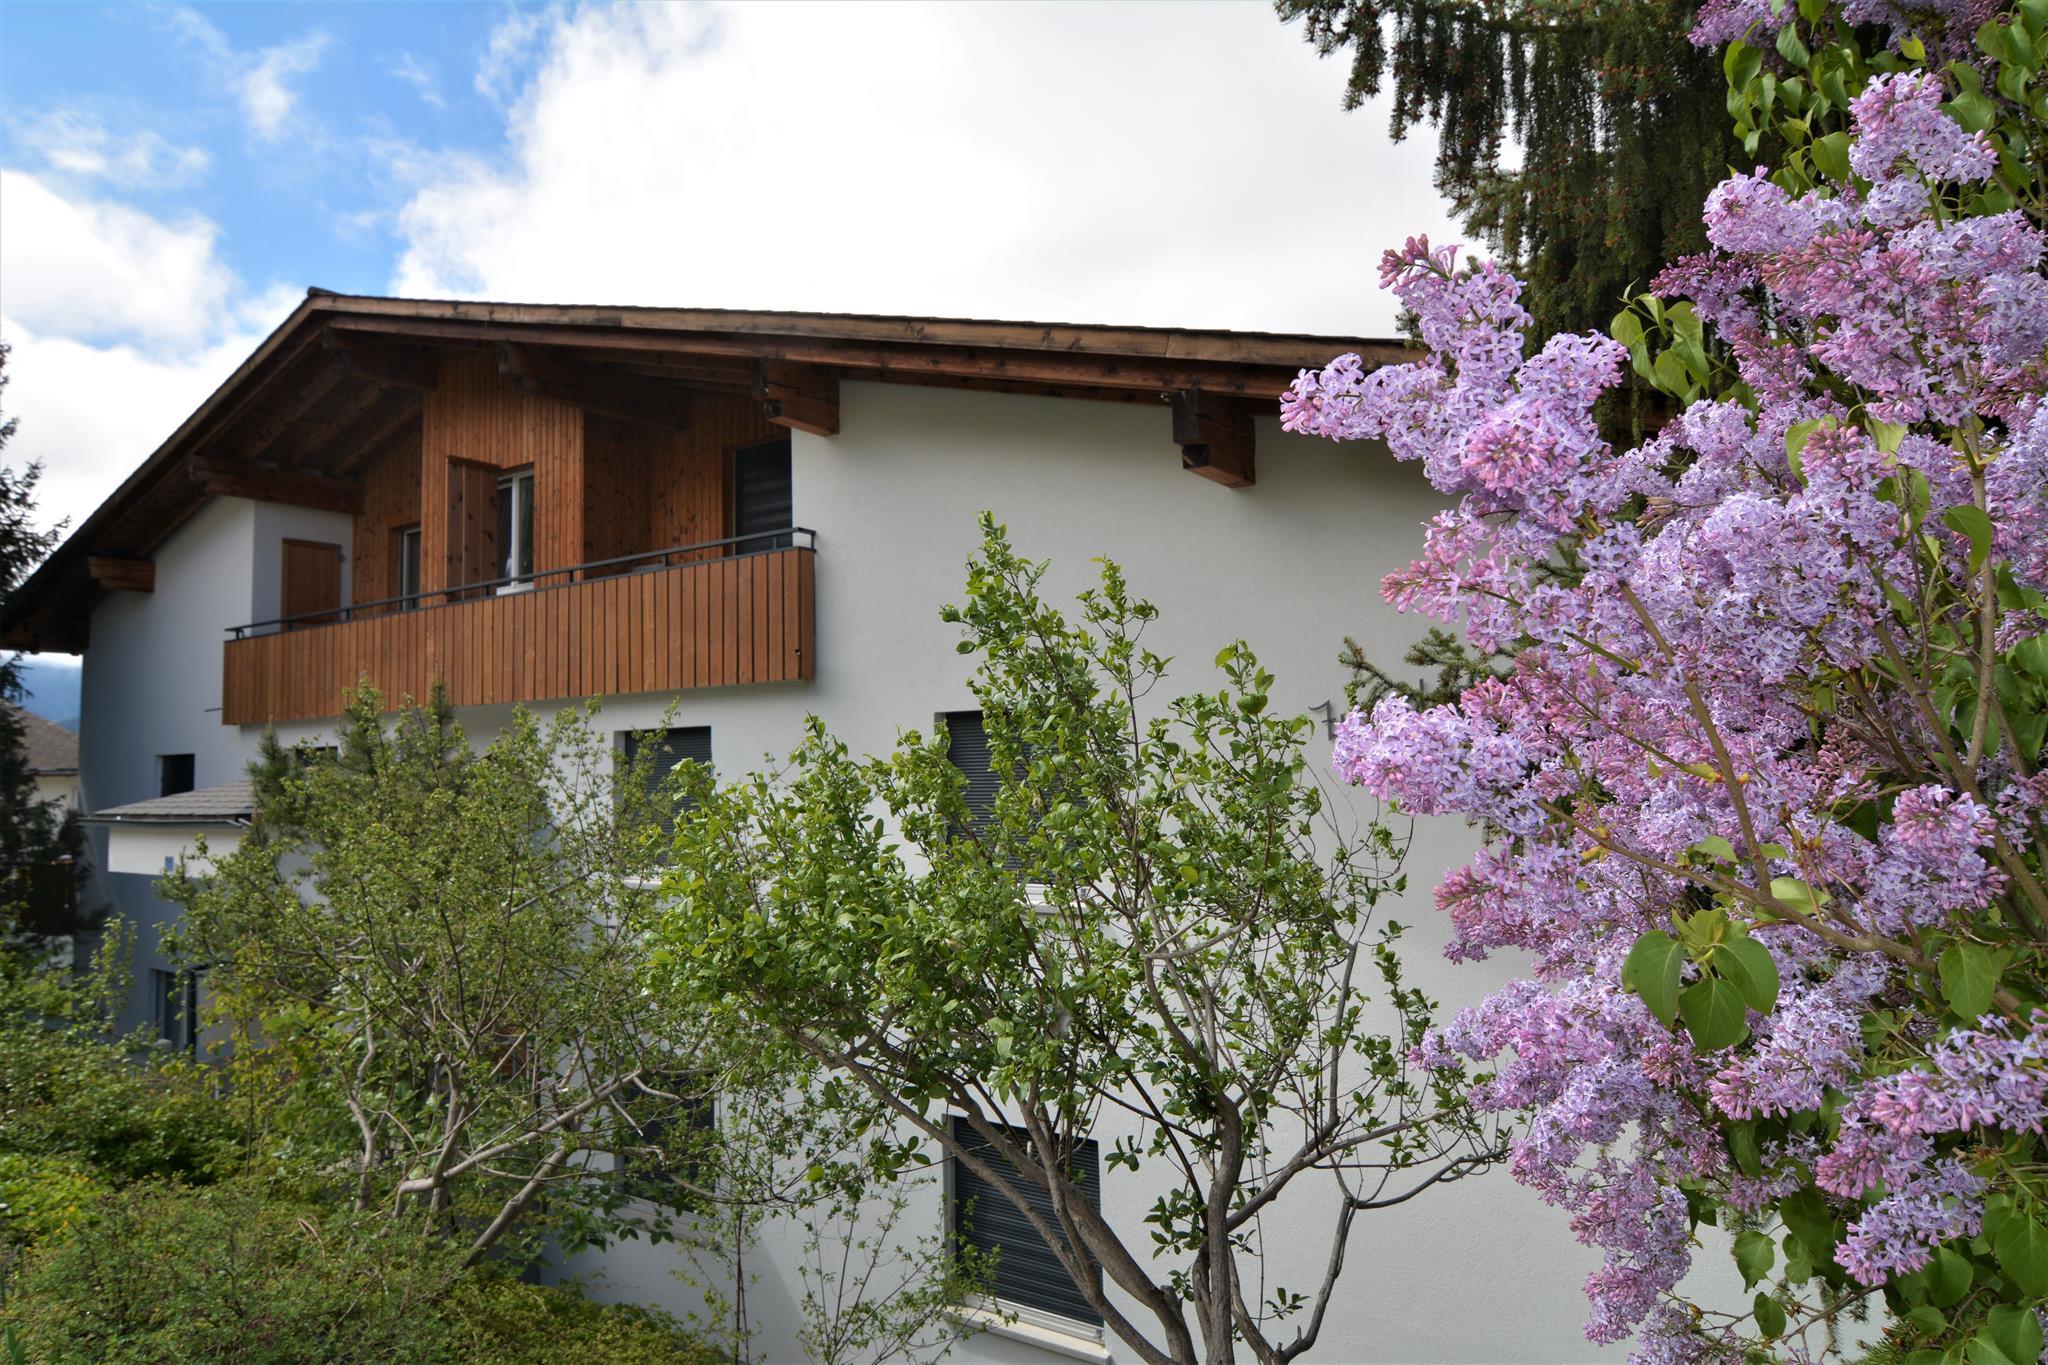 Tgesa Zundregn 4 Zimmerwohnung - 7 Betten Ferienwohnung in der Schweiz